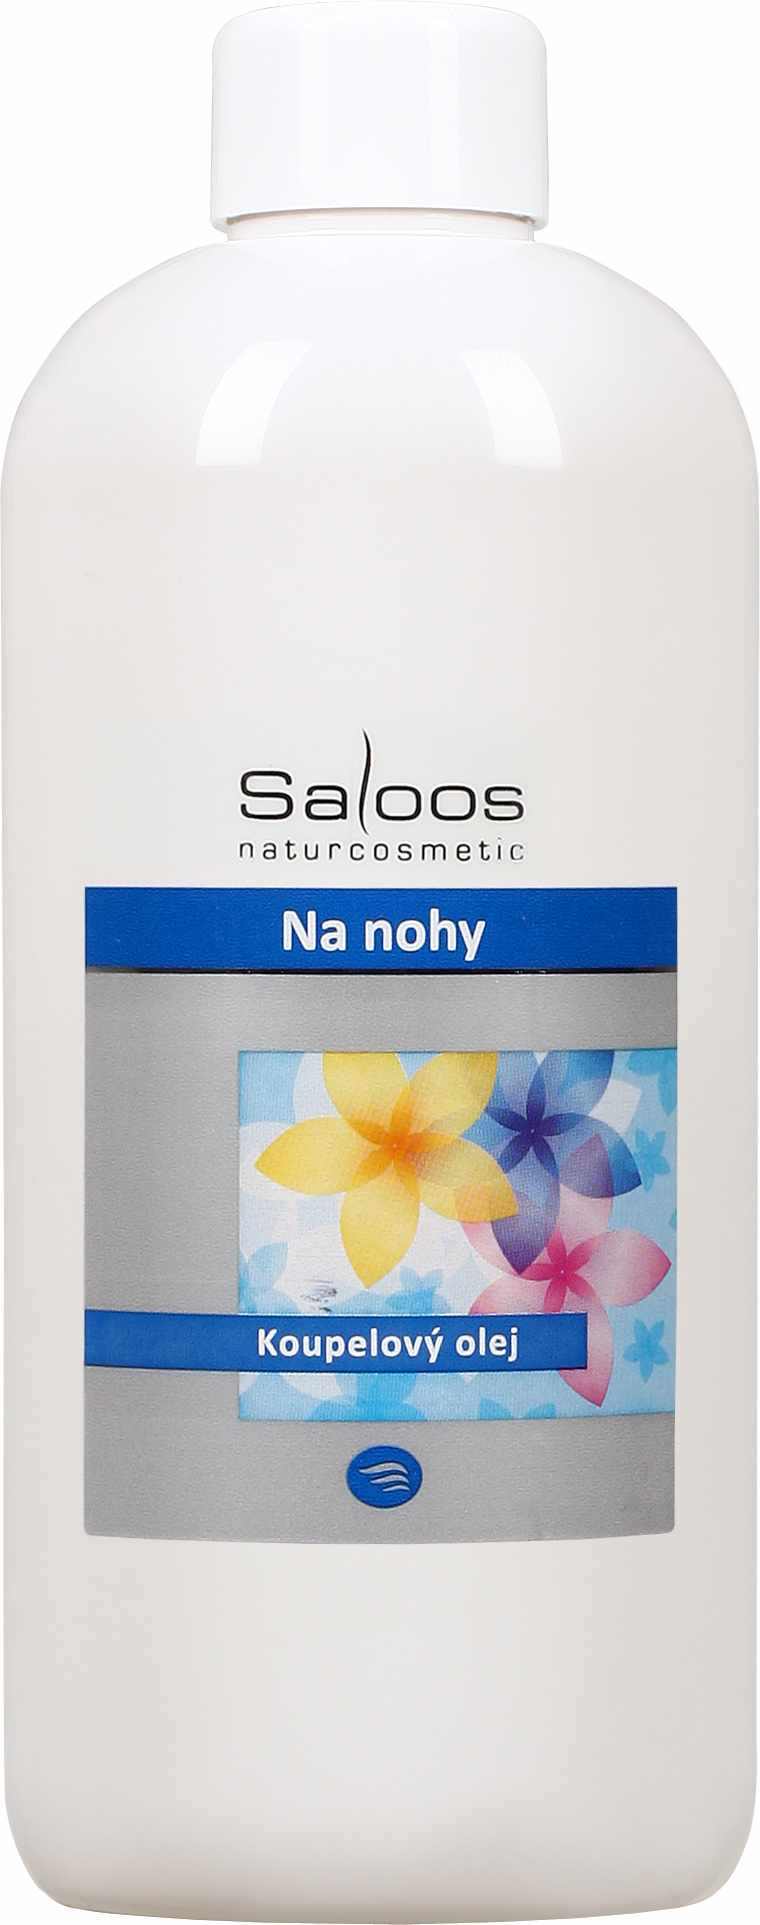 Saloos Na nohy - koupelový olej Balení: 500 ml